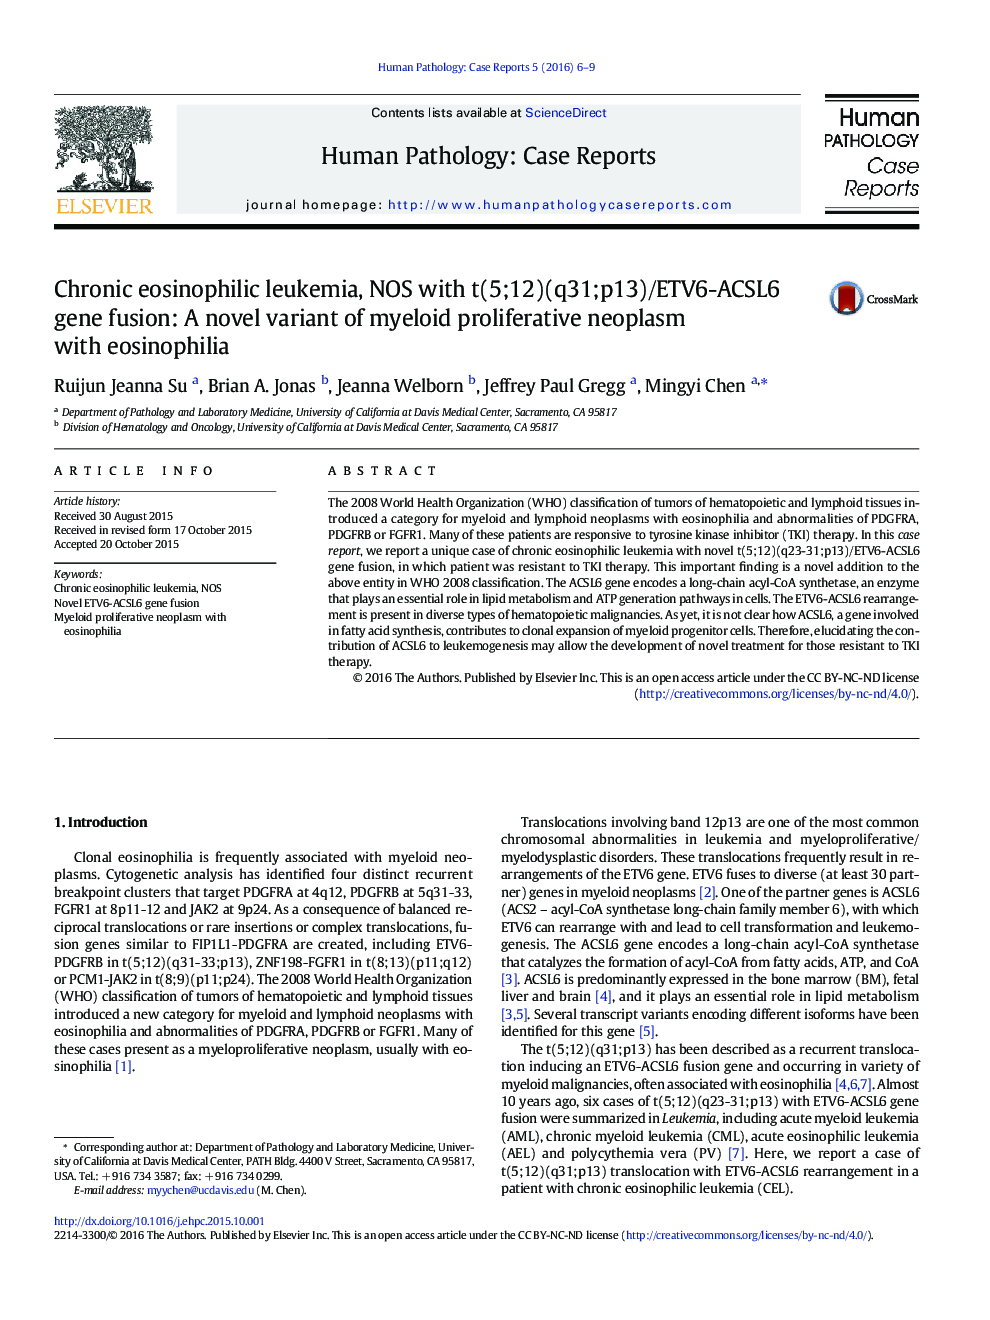 لوسمی ائوزینوفیلیک مزمن، NOS با همجوشی ژنی t(5;12)(q31;p13)/ETV6-ACSL6: یک نوع جدیدی از نئوپلاسم پرولیفراتیو میلوئید با ائوزینوفیلی